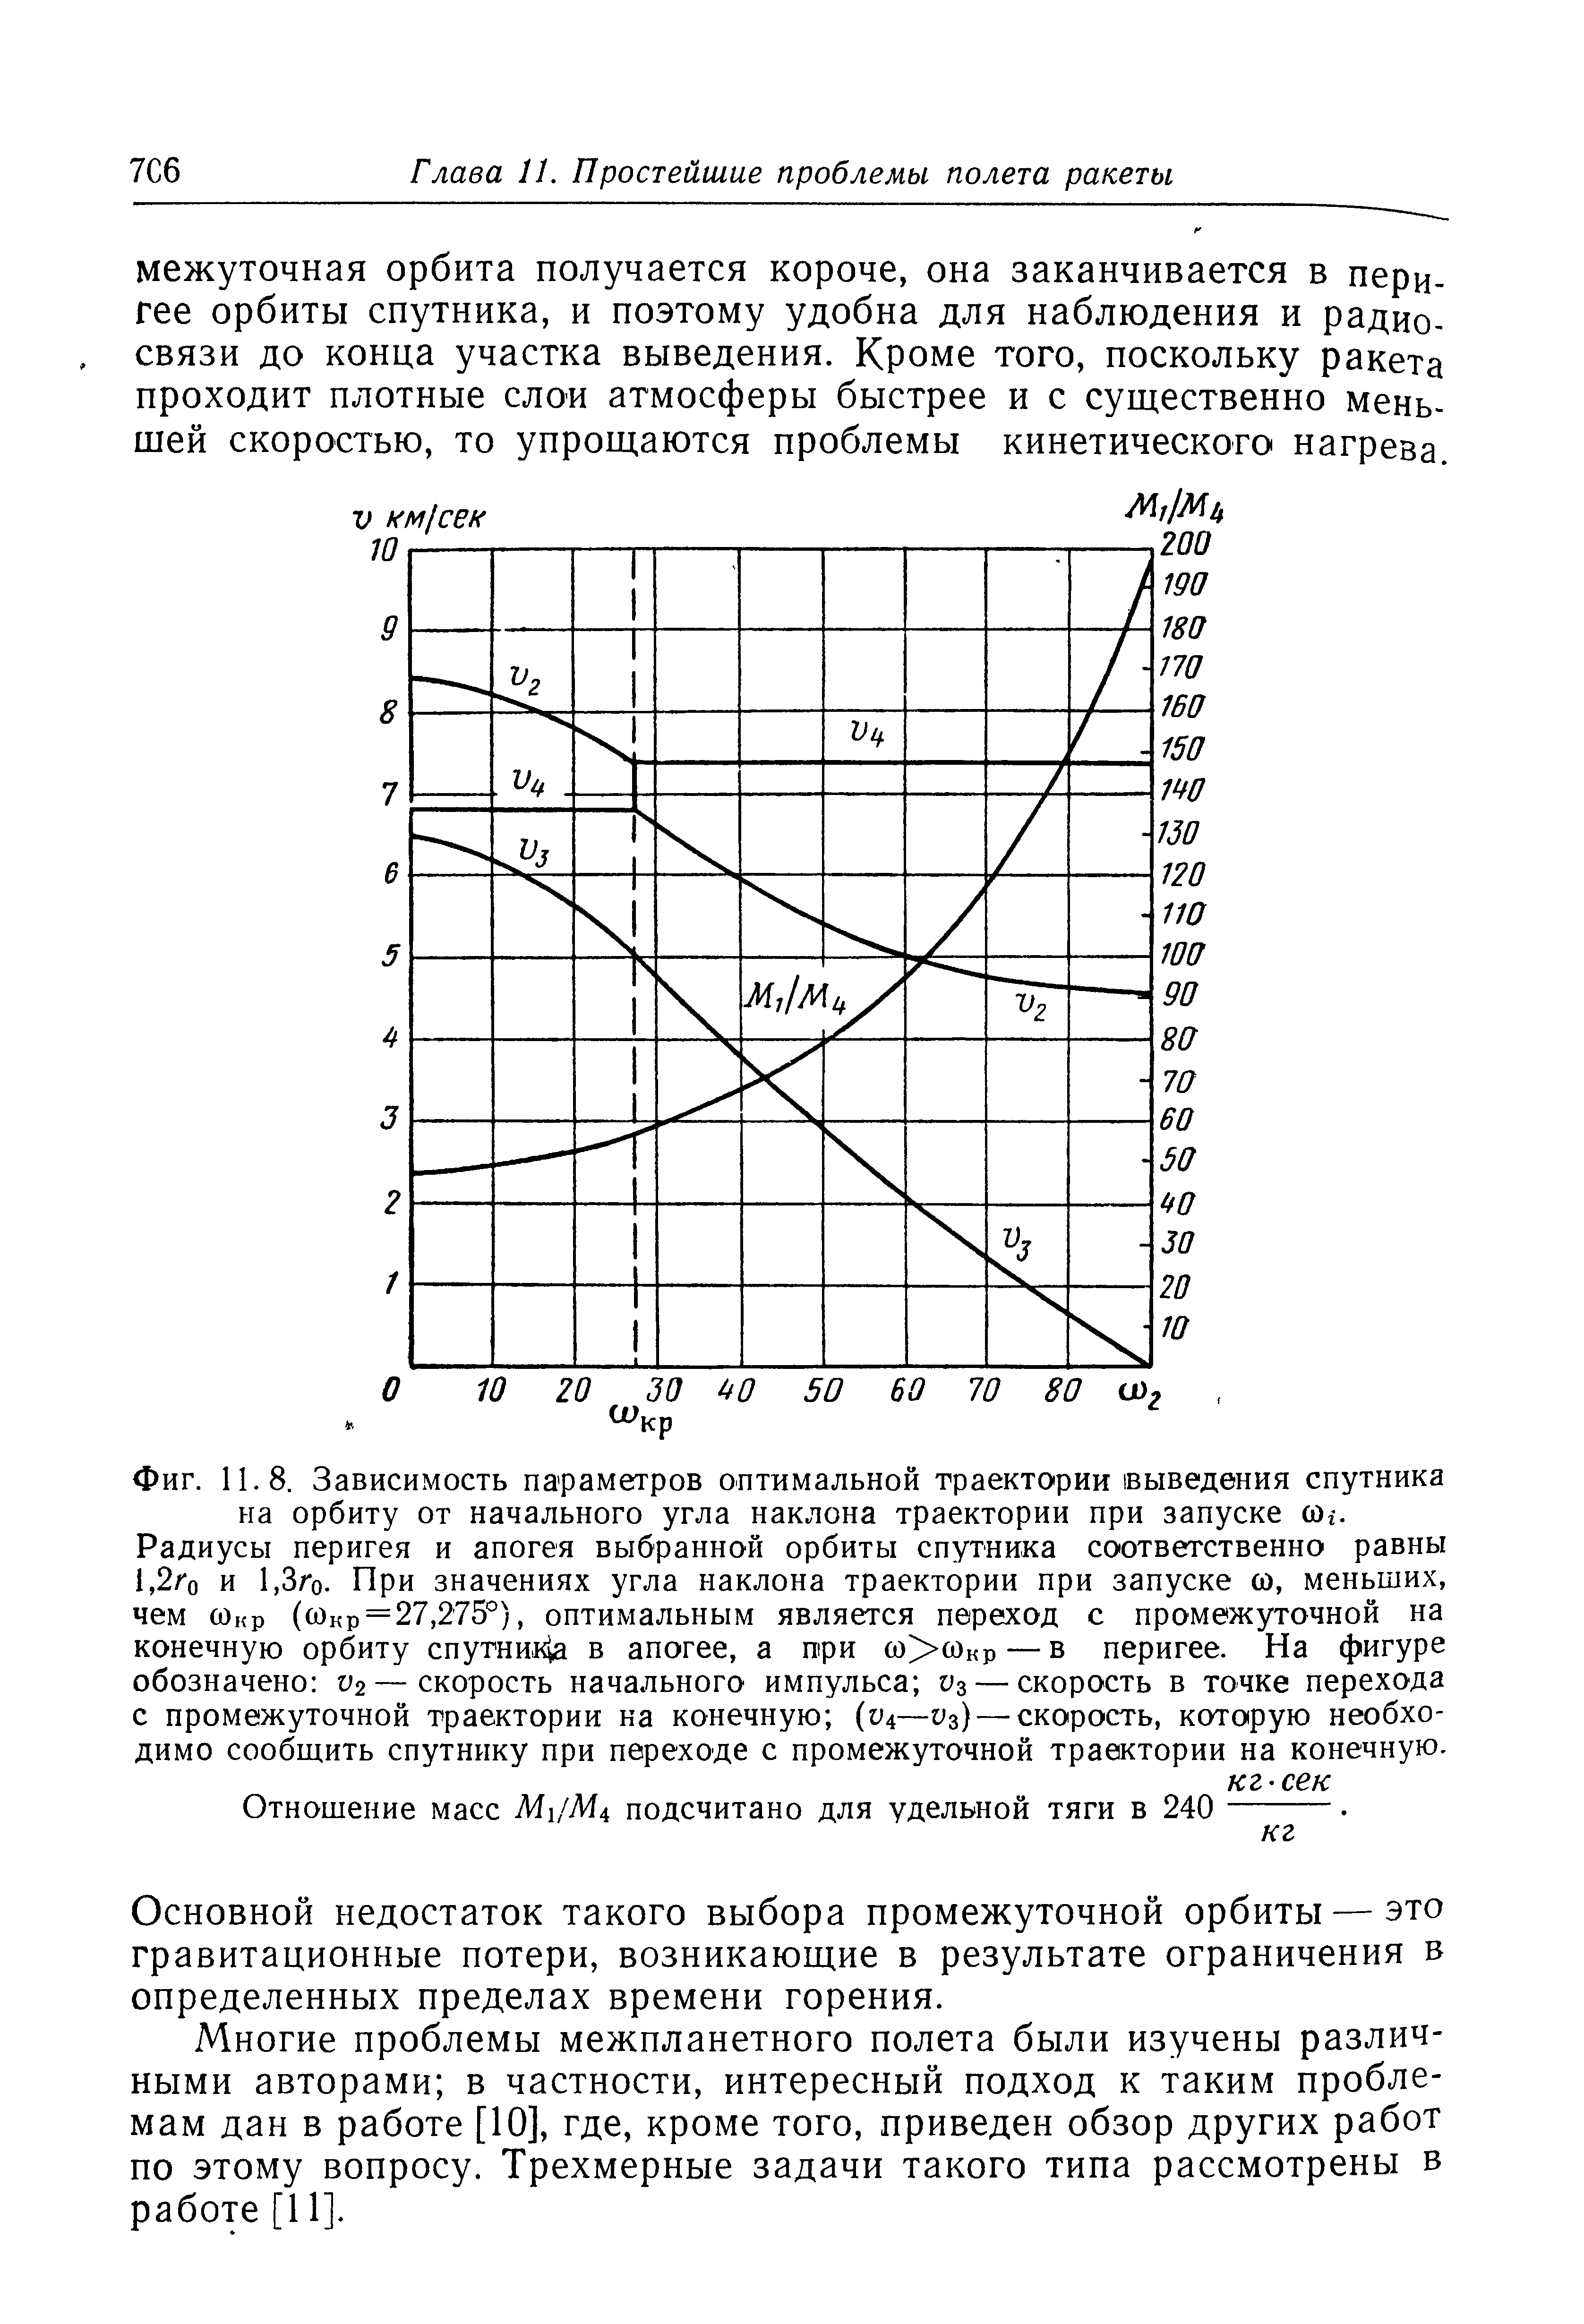 Фиг. 11.8. Зависимость параметров <a href="/info/362194">оптимальной траектории</a> выведения спутника на орбиту от начального угла <a href="/info/40784">наклона траектории</a> при запуске (Ог. Радиусы перигея и апогея выбранной <a href="/info/367991">орбиты спутника</a> соответственно равны 1,2/ о и 1,Зго. При значениях угла <a href="/info/40784">наклона траектории</a> при запуске со, меньших, чем сонр (сОкр = 27,275°), оптимальным является переход с промежуточной на конечную <a href="/info/367991">орбиту спутник</a>1а в апогее, а три со>сокр — в перигее. На фигуре обозначено 2—<a href="/info/47704">скорость начального</a> импульса Уз —скорость в <a href="/info/120988">точке перехода</a> с промежуточной траектории ка конечную (У4— з) —скорость, которую необходимо сообщить спутнику при переходе с промежуточной траектории на конечную.
